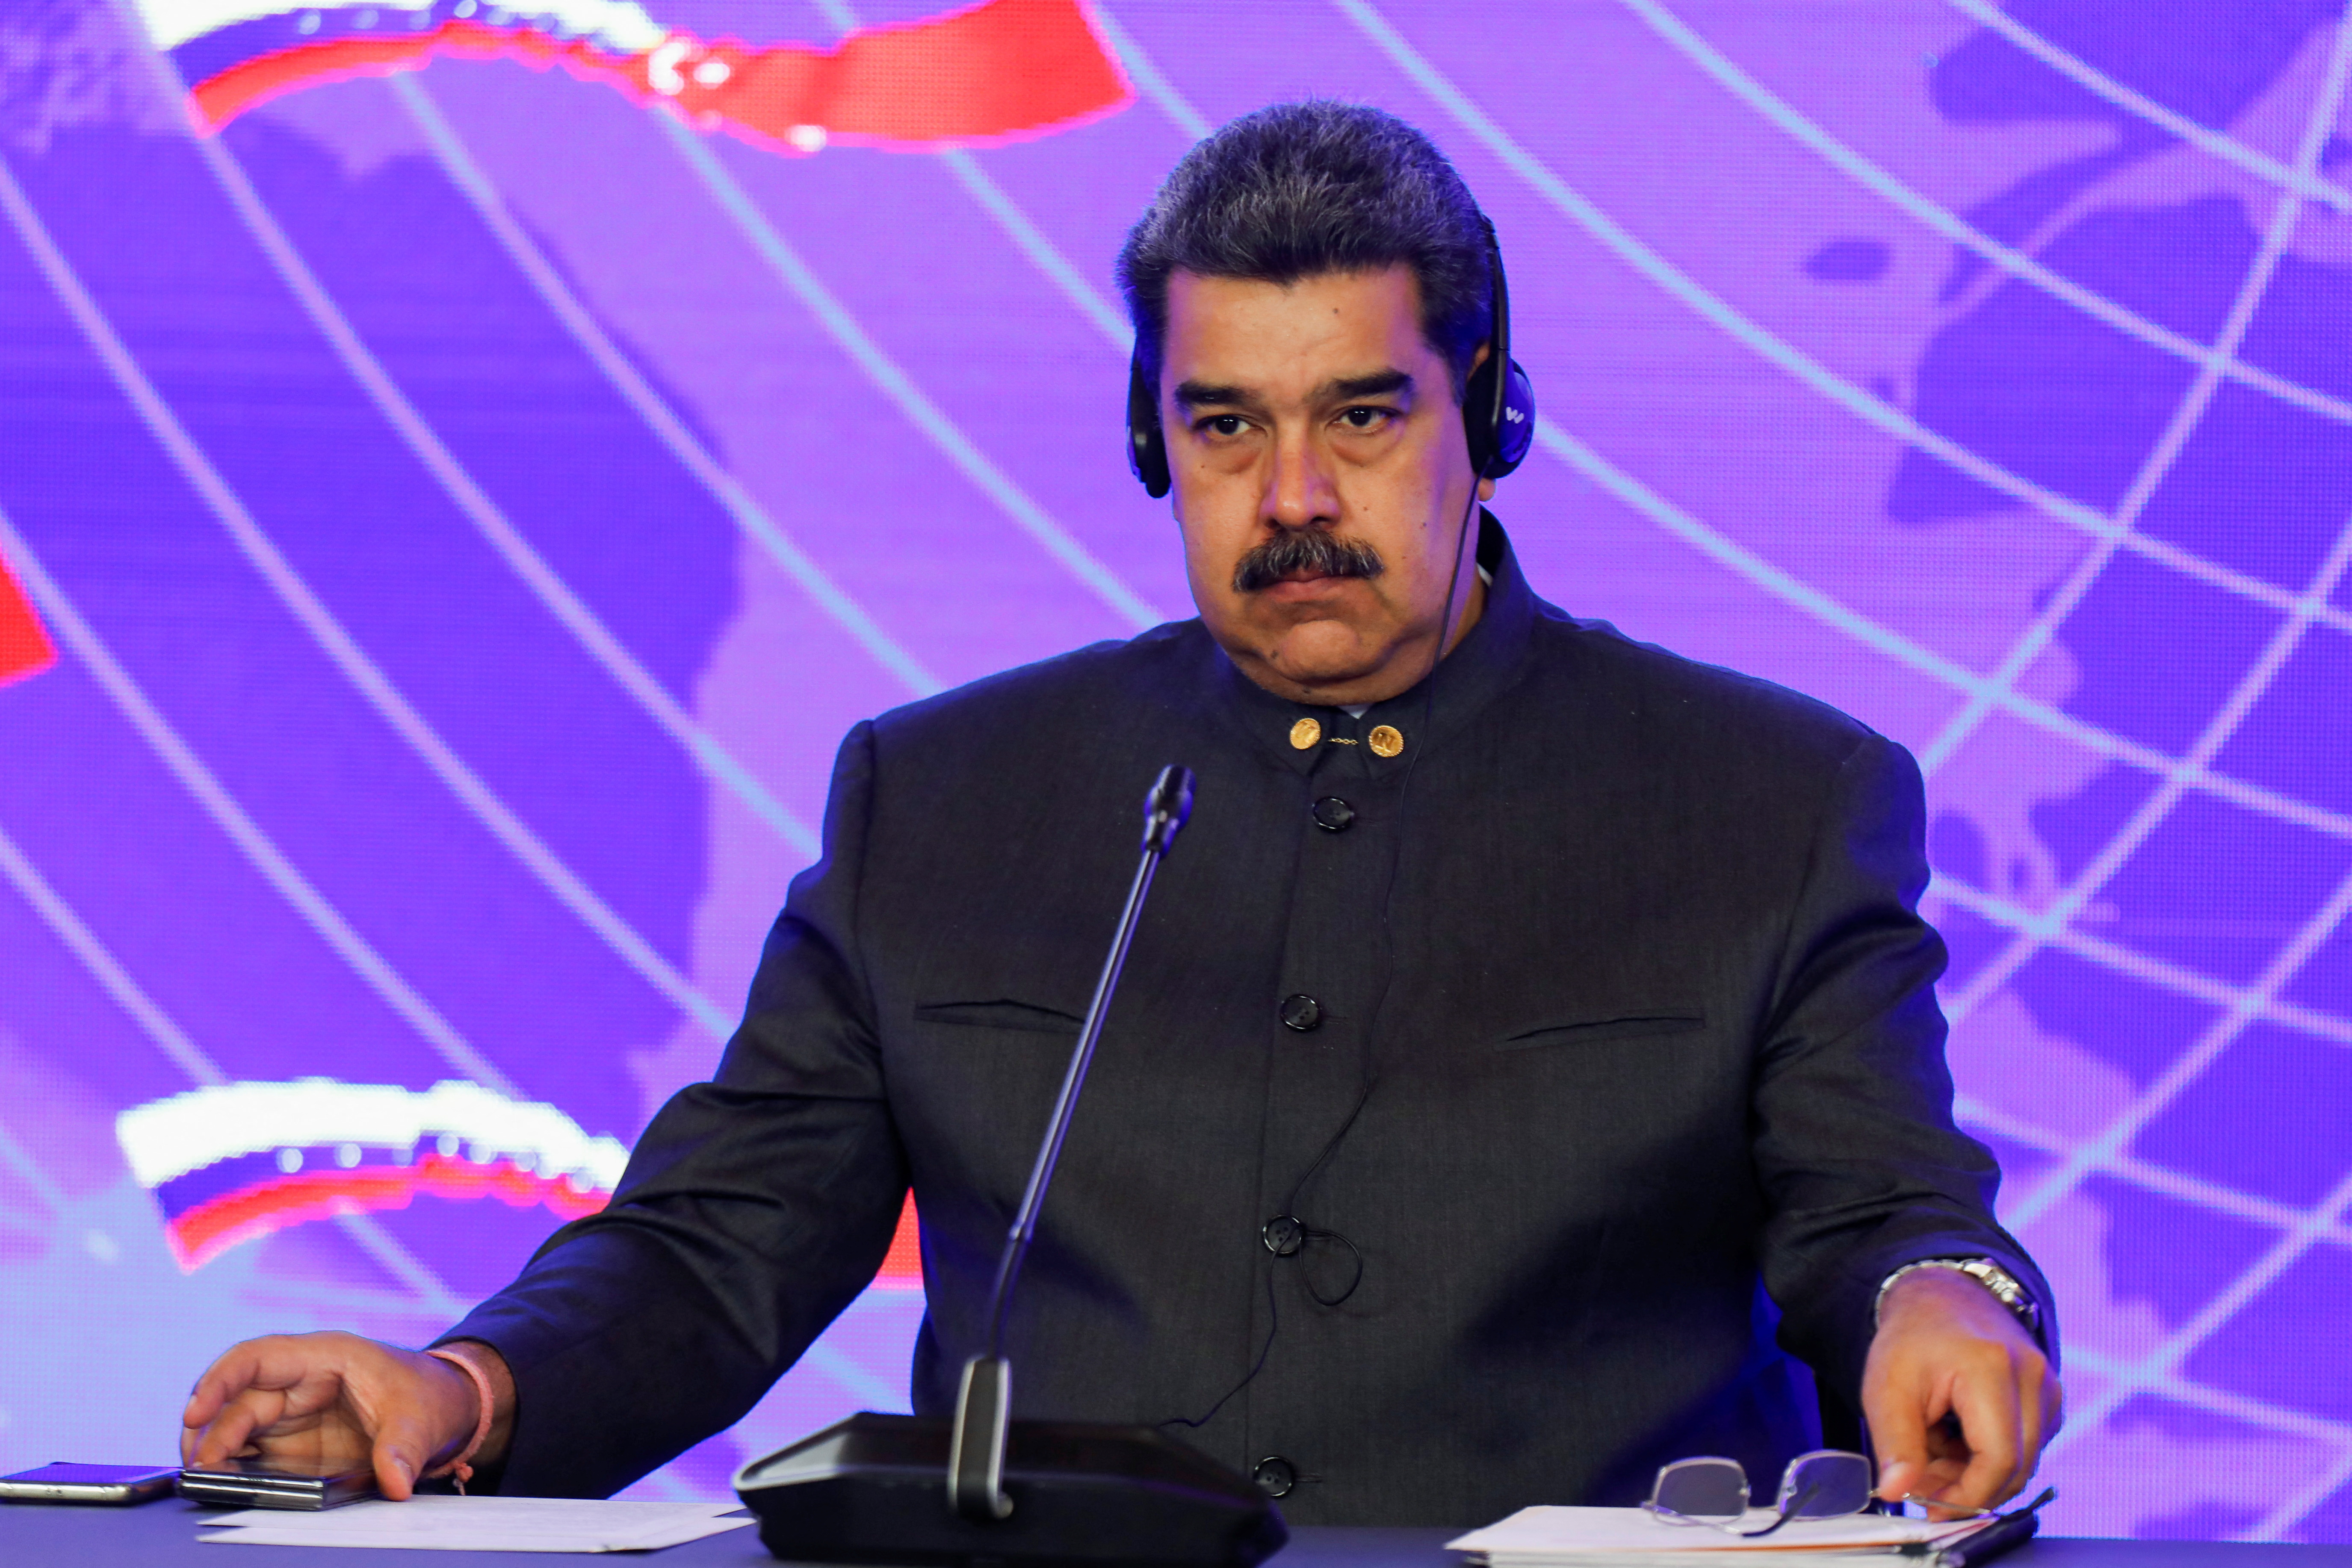 El régimen de Nicolás Maduro insiste en fortalecer las relaciones bilaterales con Irán y Cuba